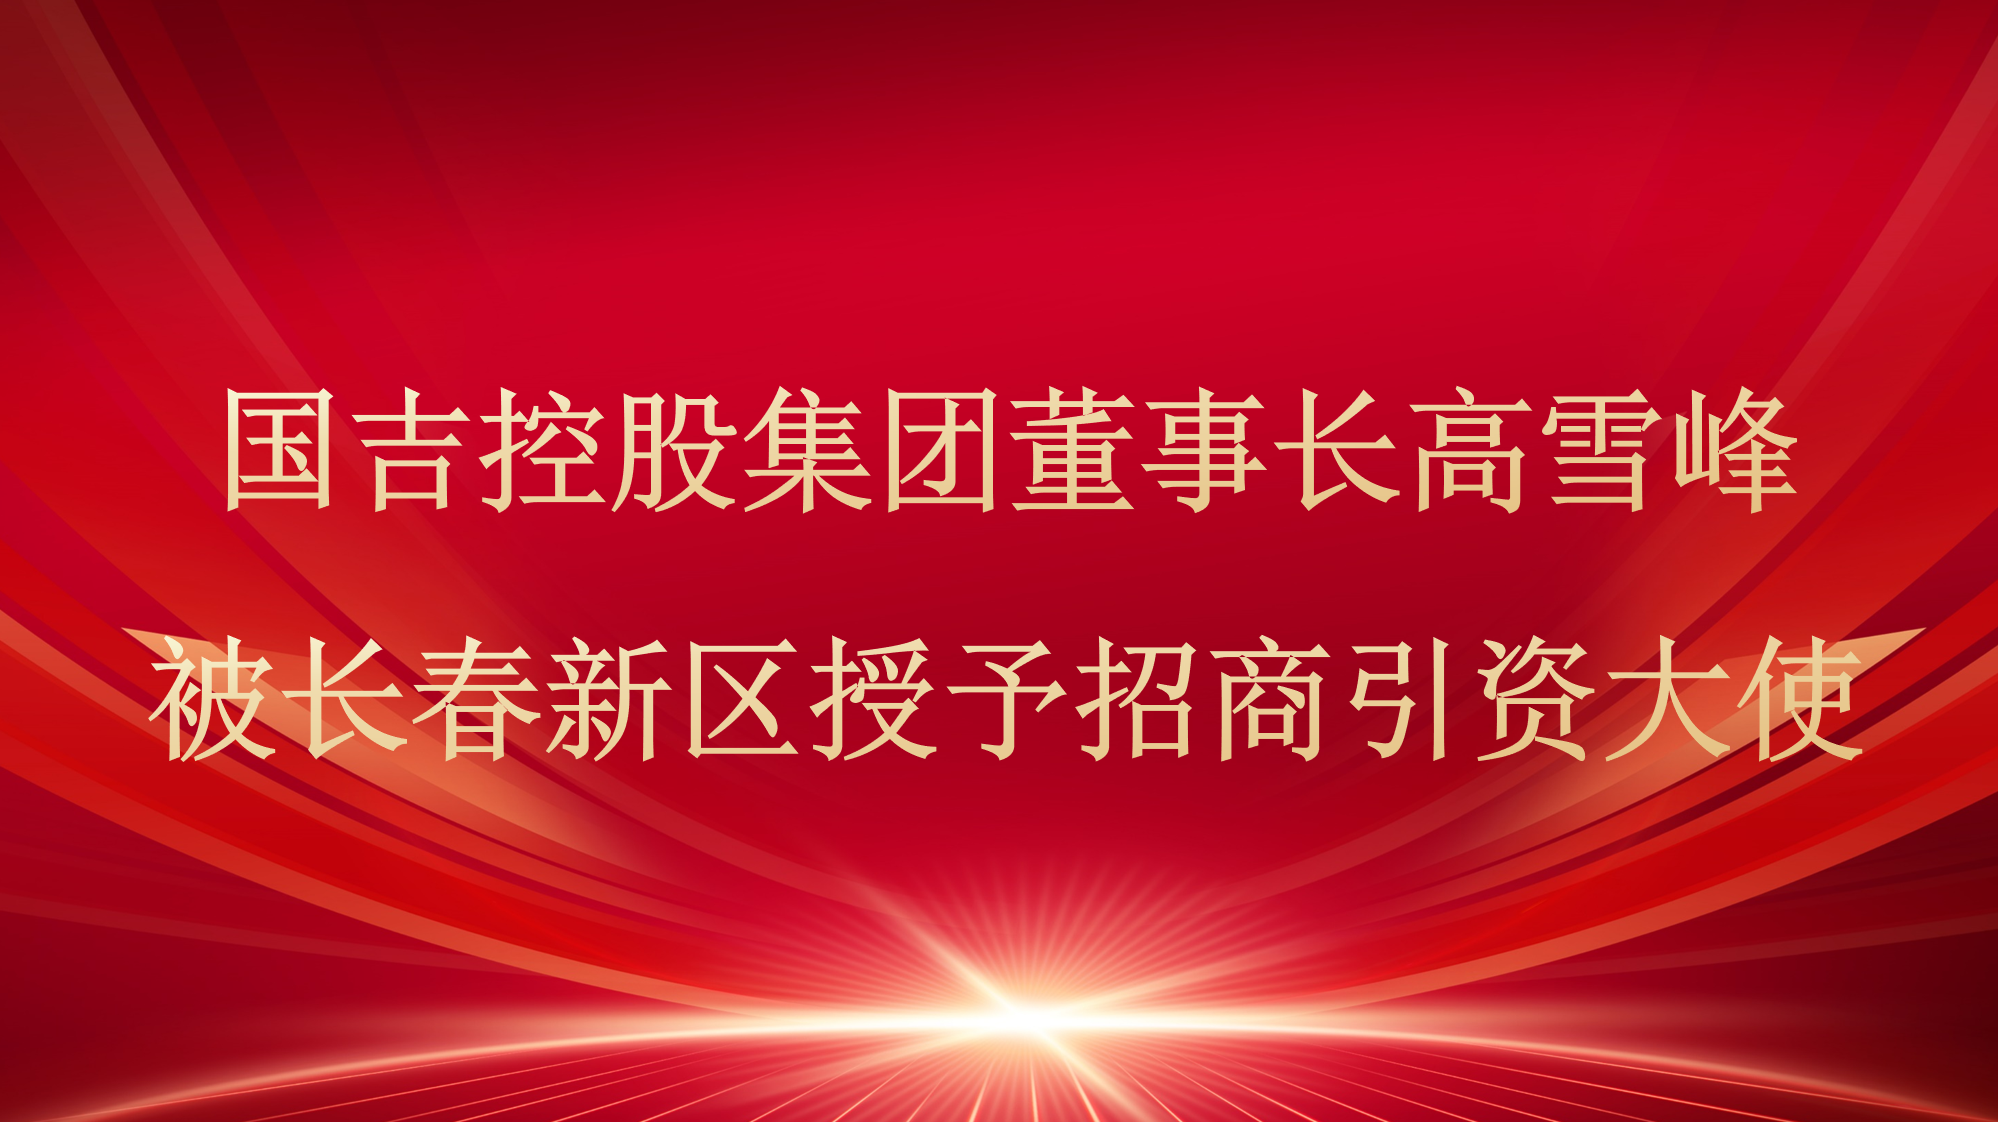 国吉控股集团董事长高雪峰被长春新区授予“招商引资大使”称号